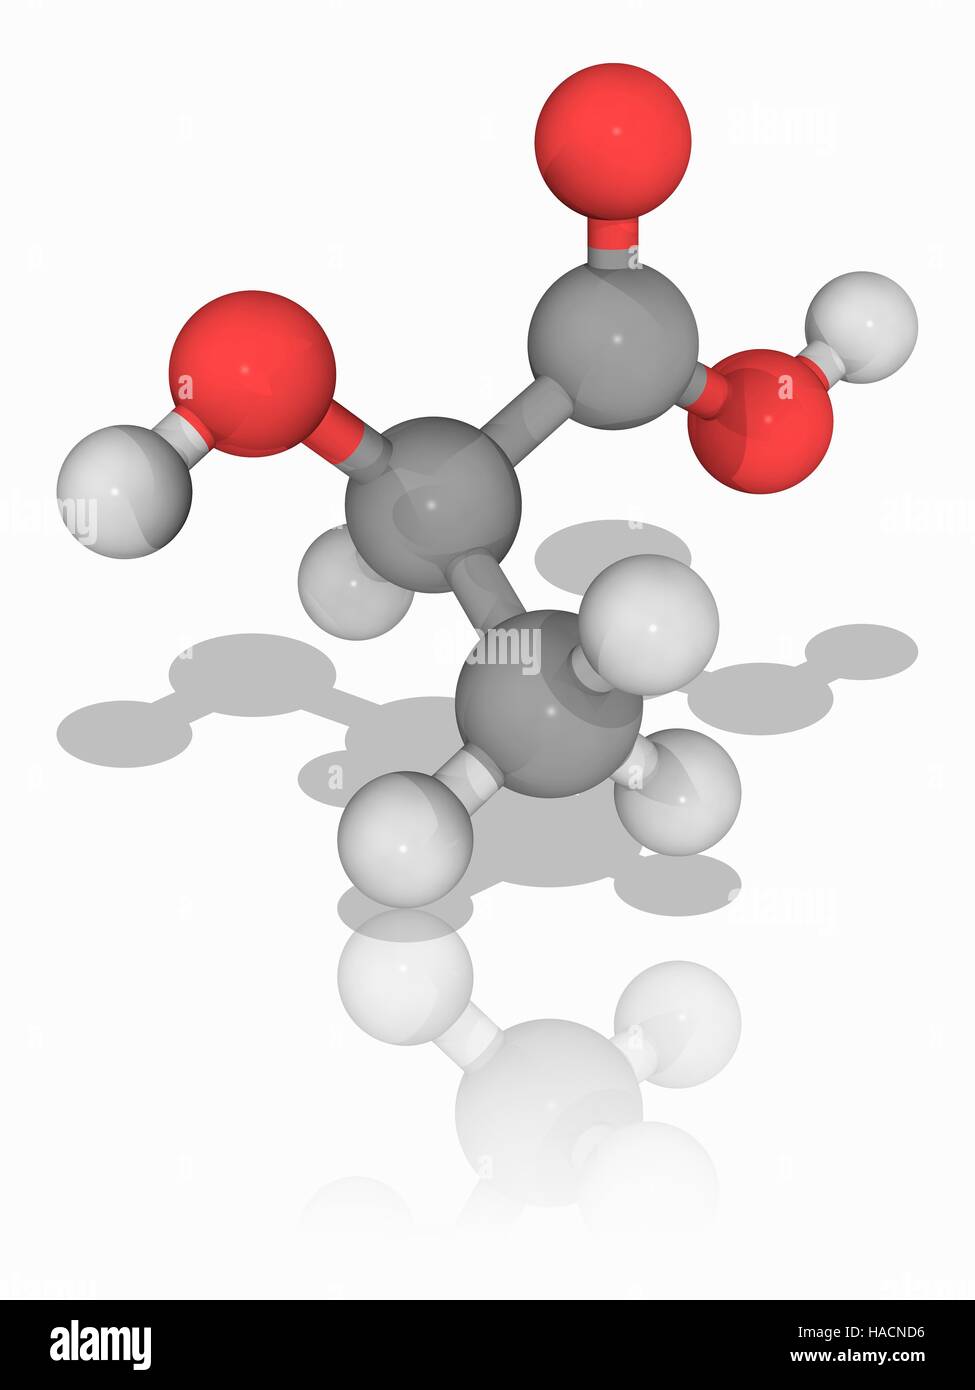 Milchsäure. Molekulares Modell des alpha-hydroxy-Säure (AHA) Milchsäure (C3. H6. O3). Es spielt eine Rolle in verschiedenen biochemischen Prozessen. Es entsteht in den Muskeln nach dem Training, und wird in verschiedenen Fermentationsprozesse hergestellt. Atome als Kugeln dargestellt werden und sind farblich gekennzeichnet: Kohlenstoff (grau), Wasserstoff (weiß) und Sauerstoff (rot). Abbildung. Stockfoto